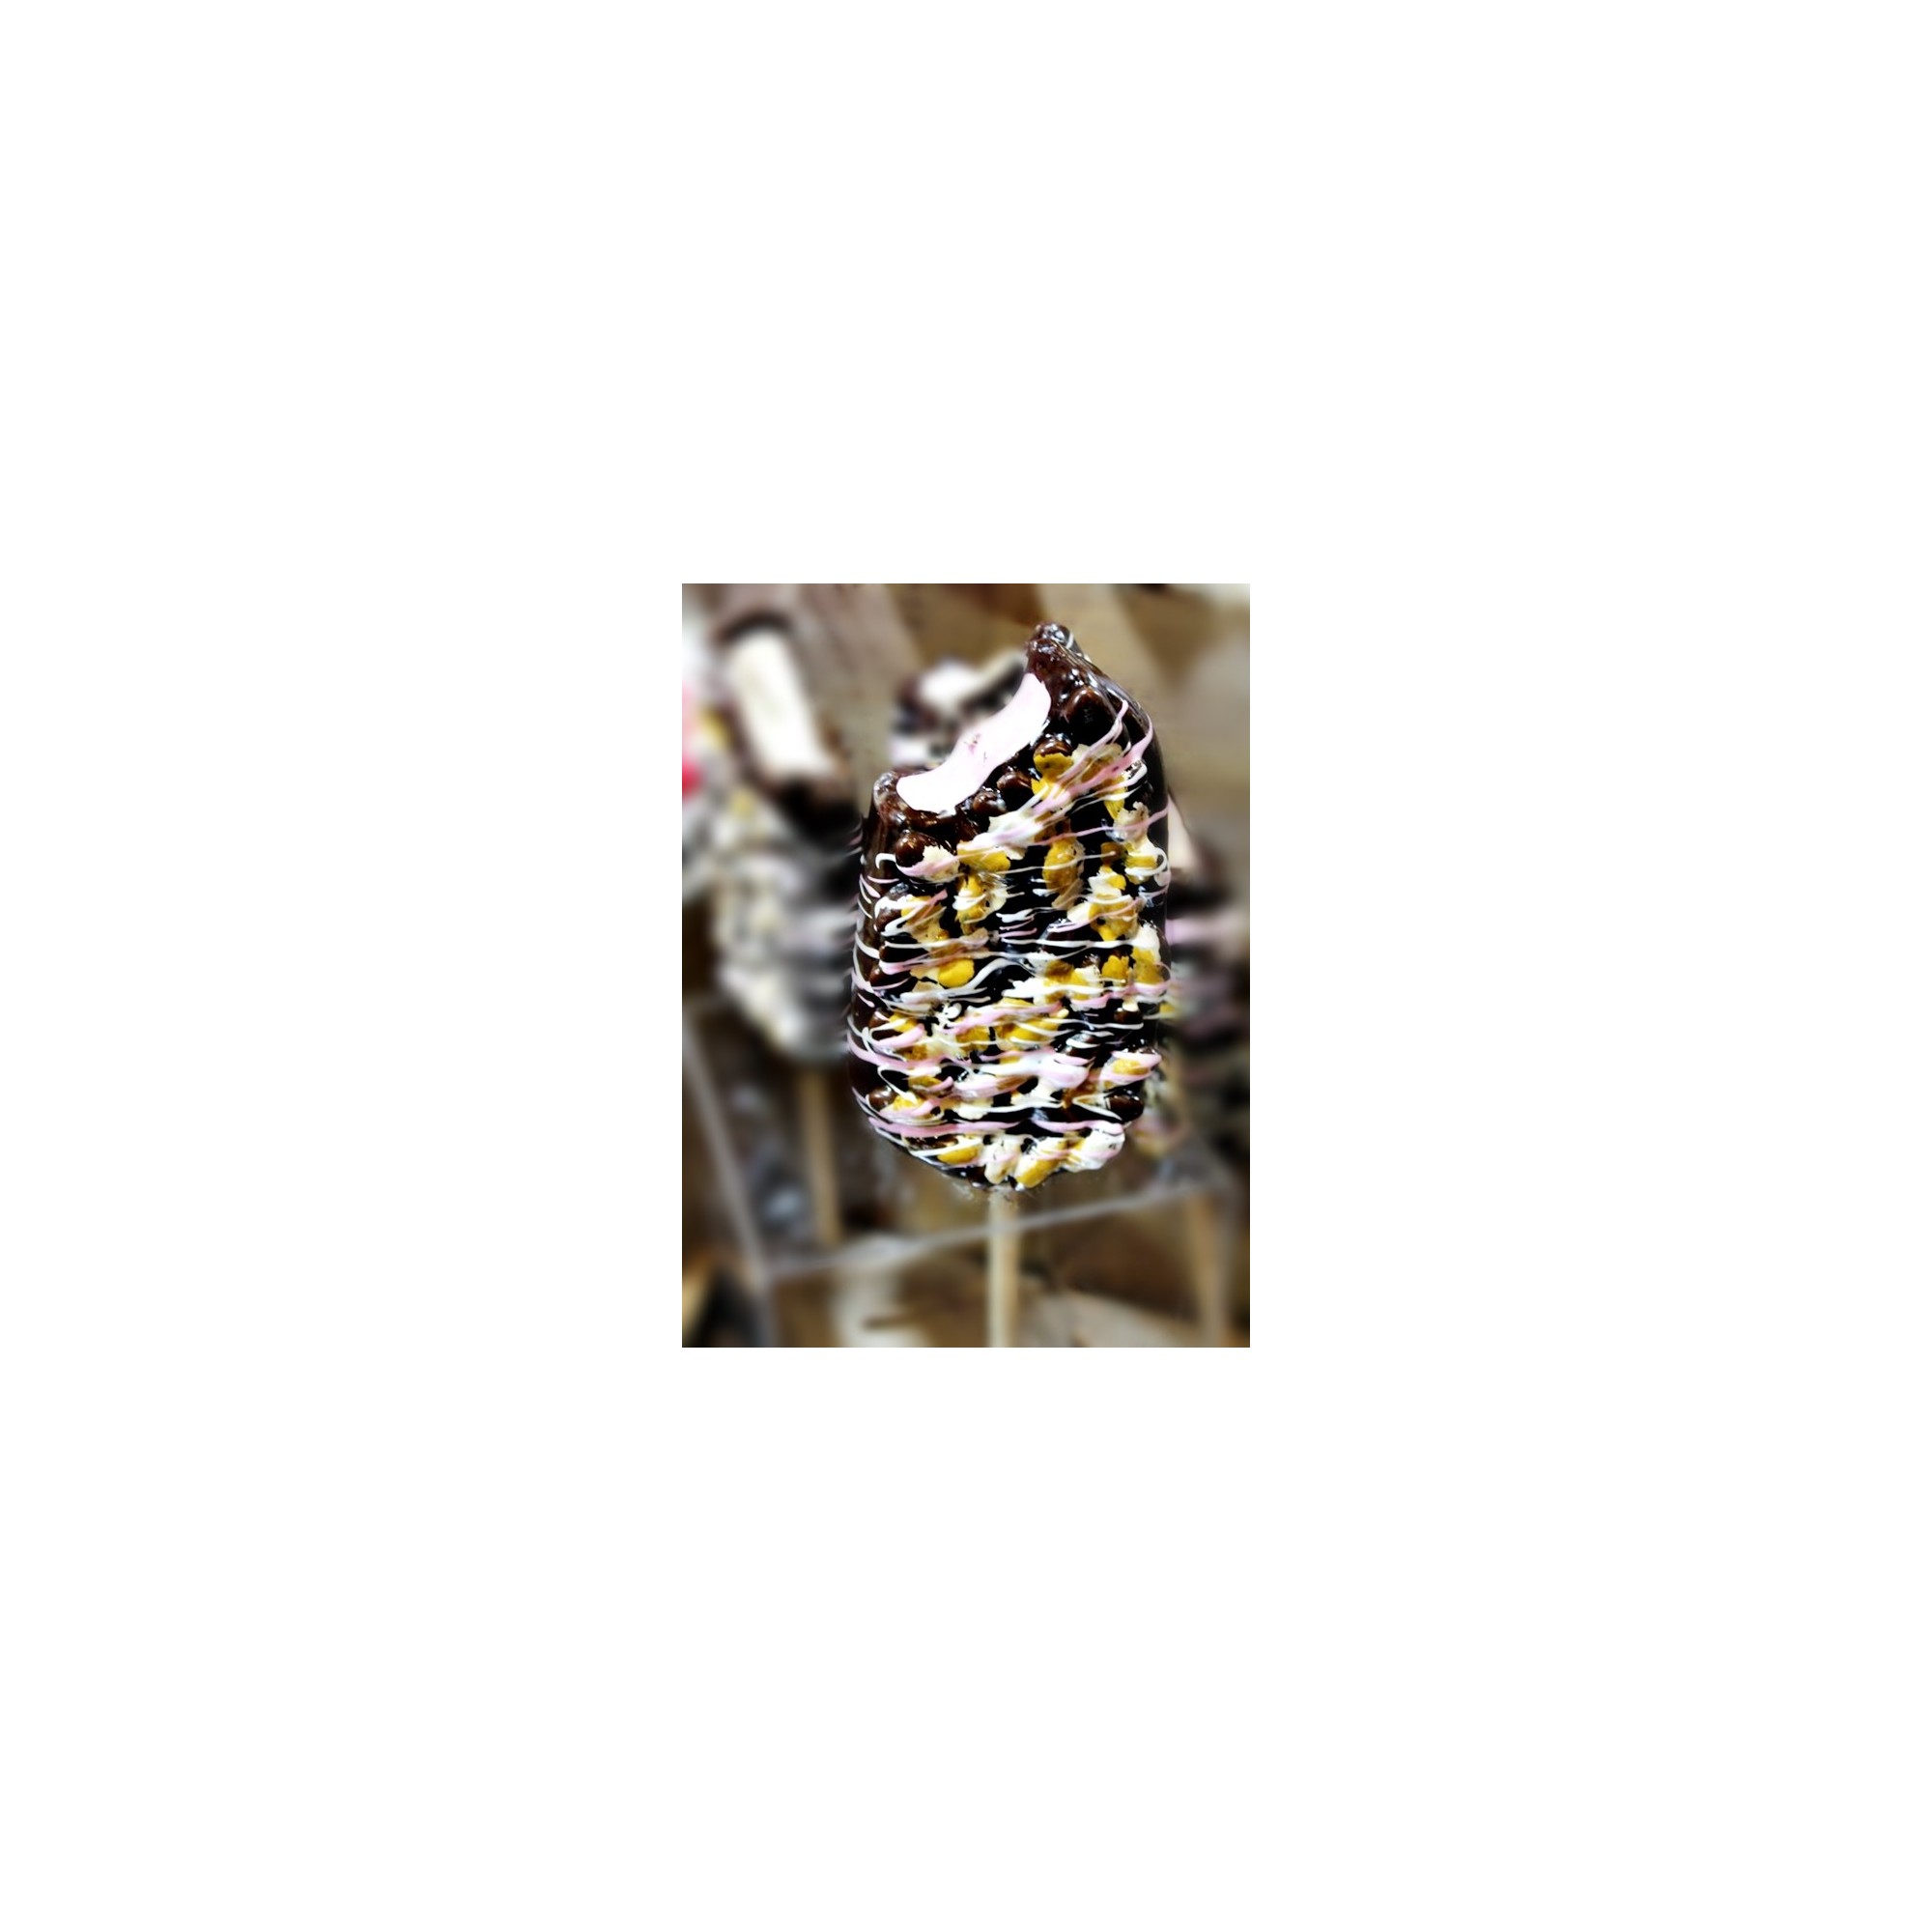 Λαμπάδα παγωτό ξυλάκι - G1645-332